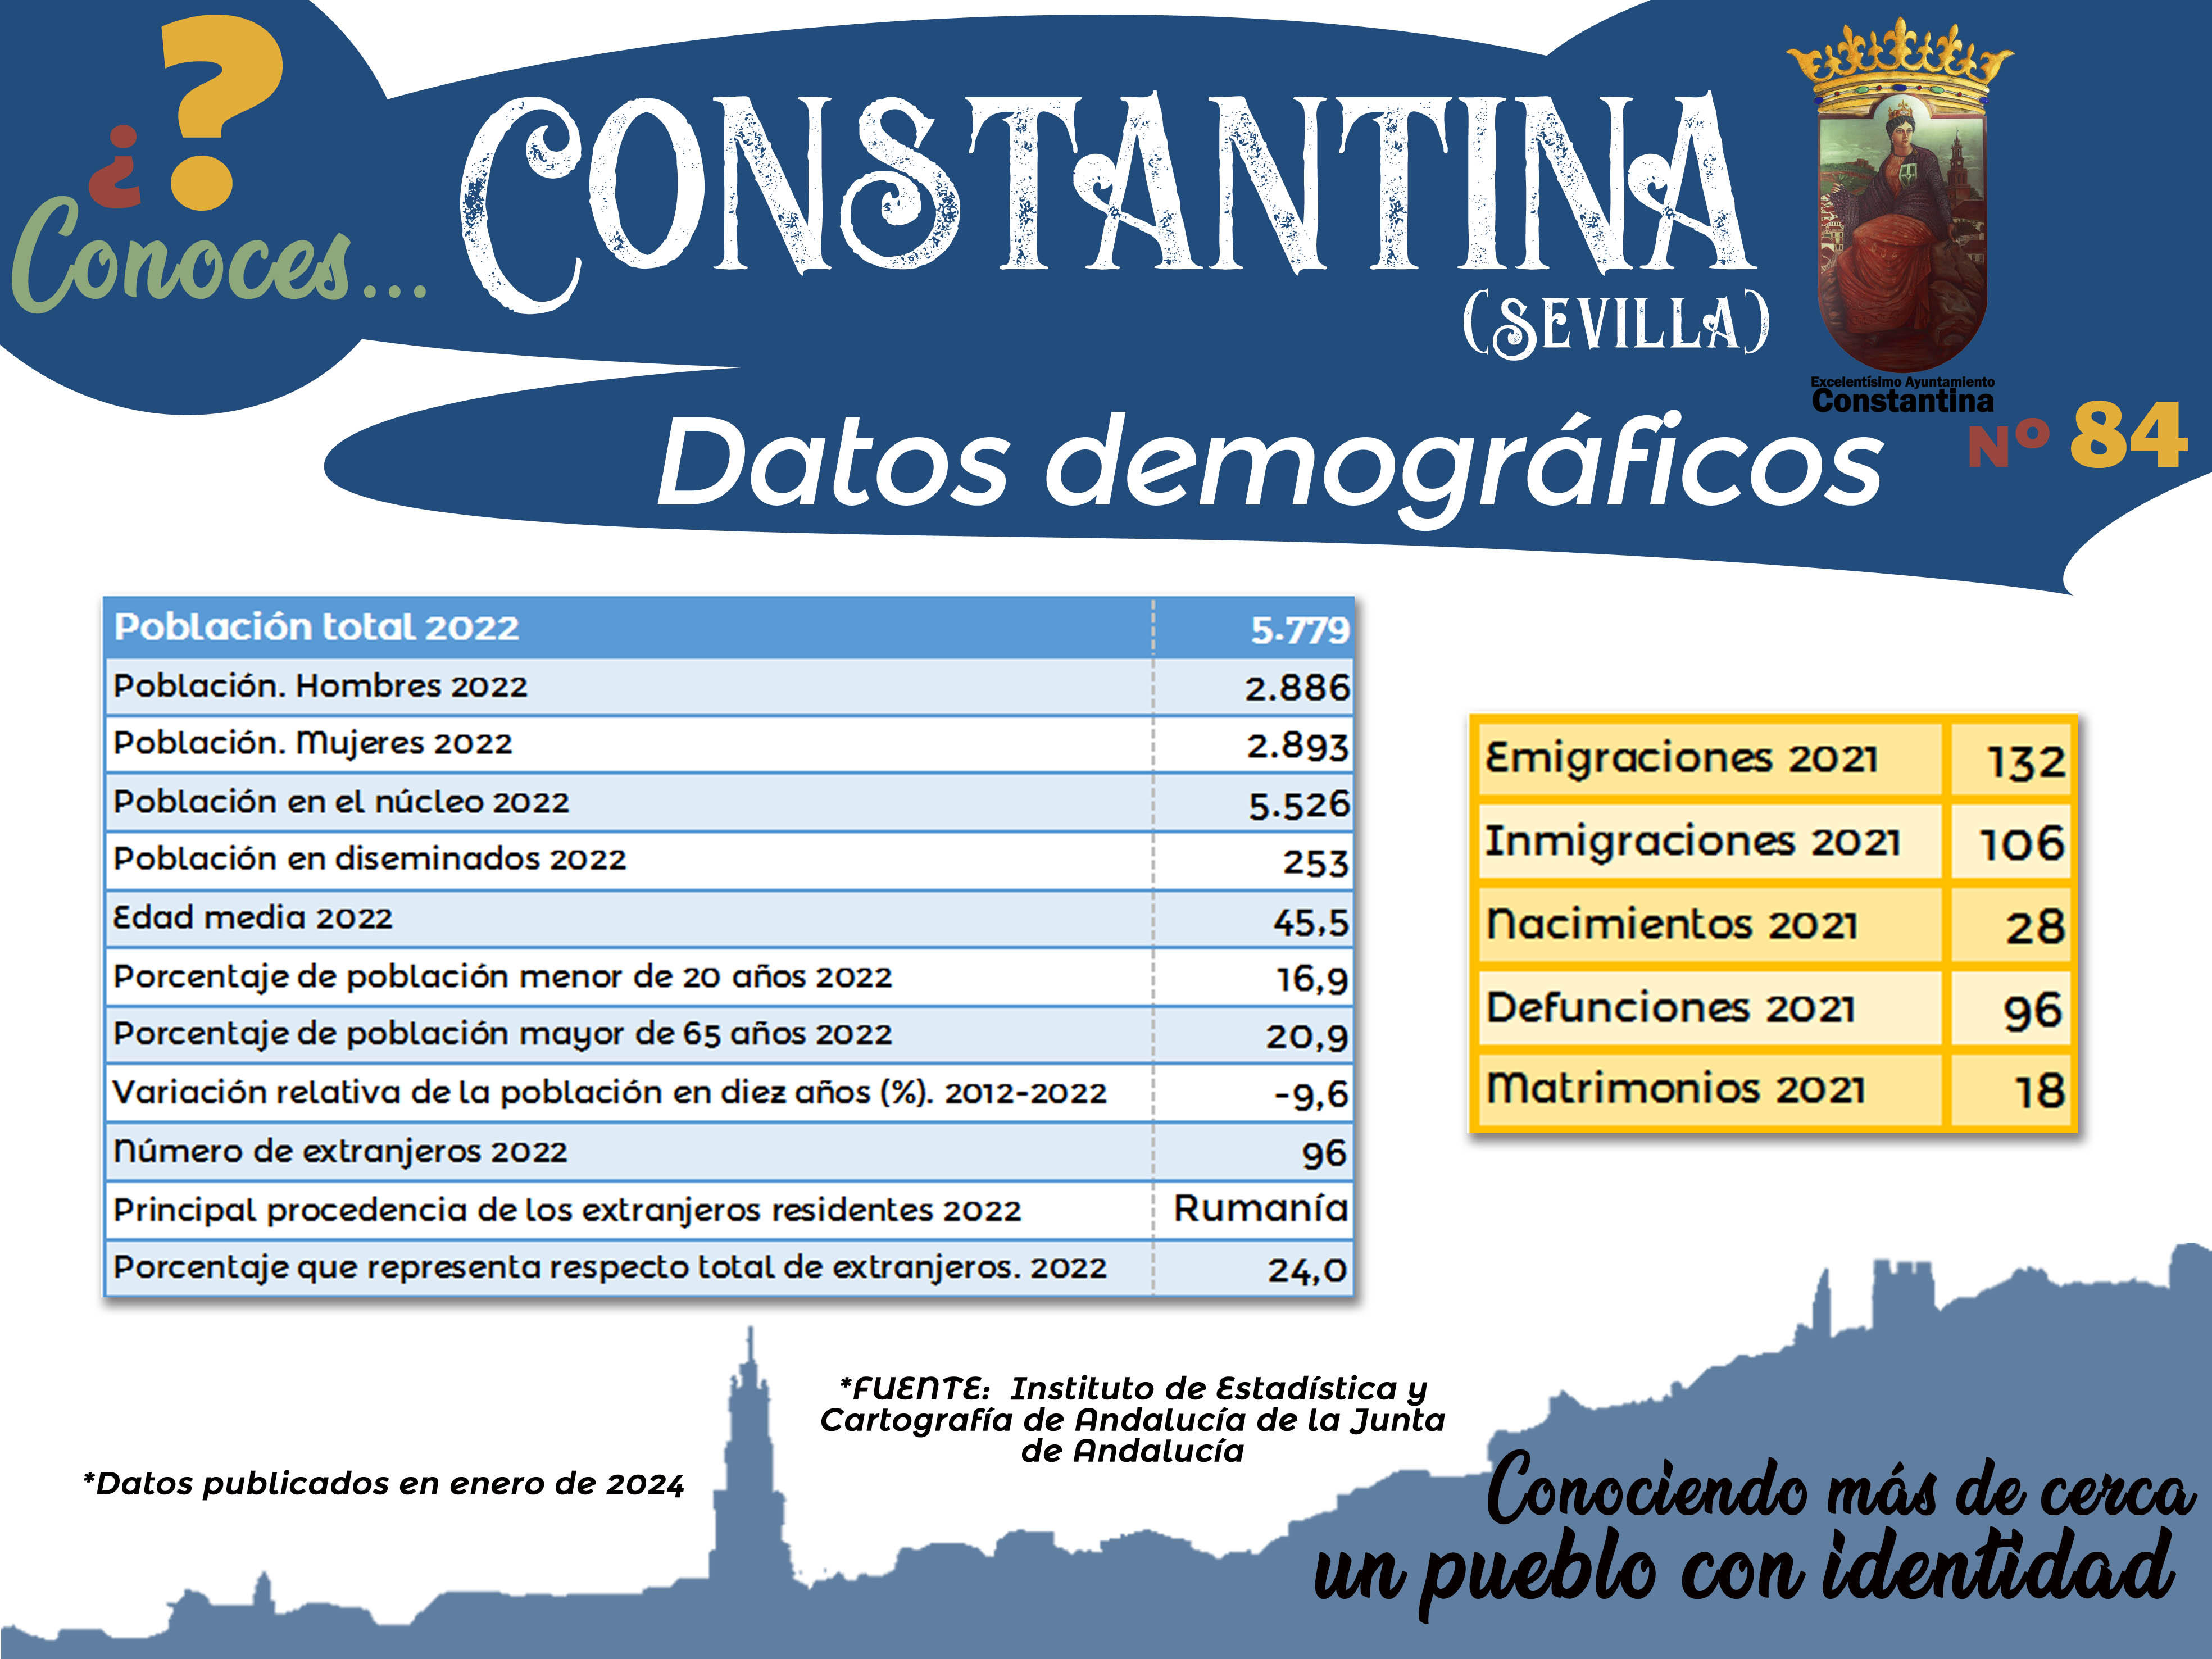 84 Datos demográficos Constantina